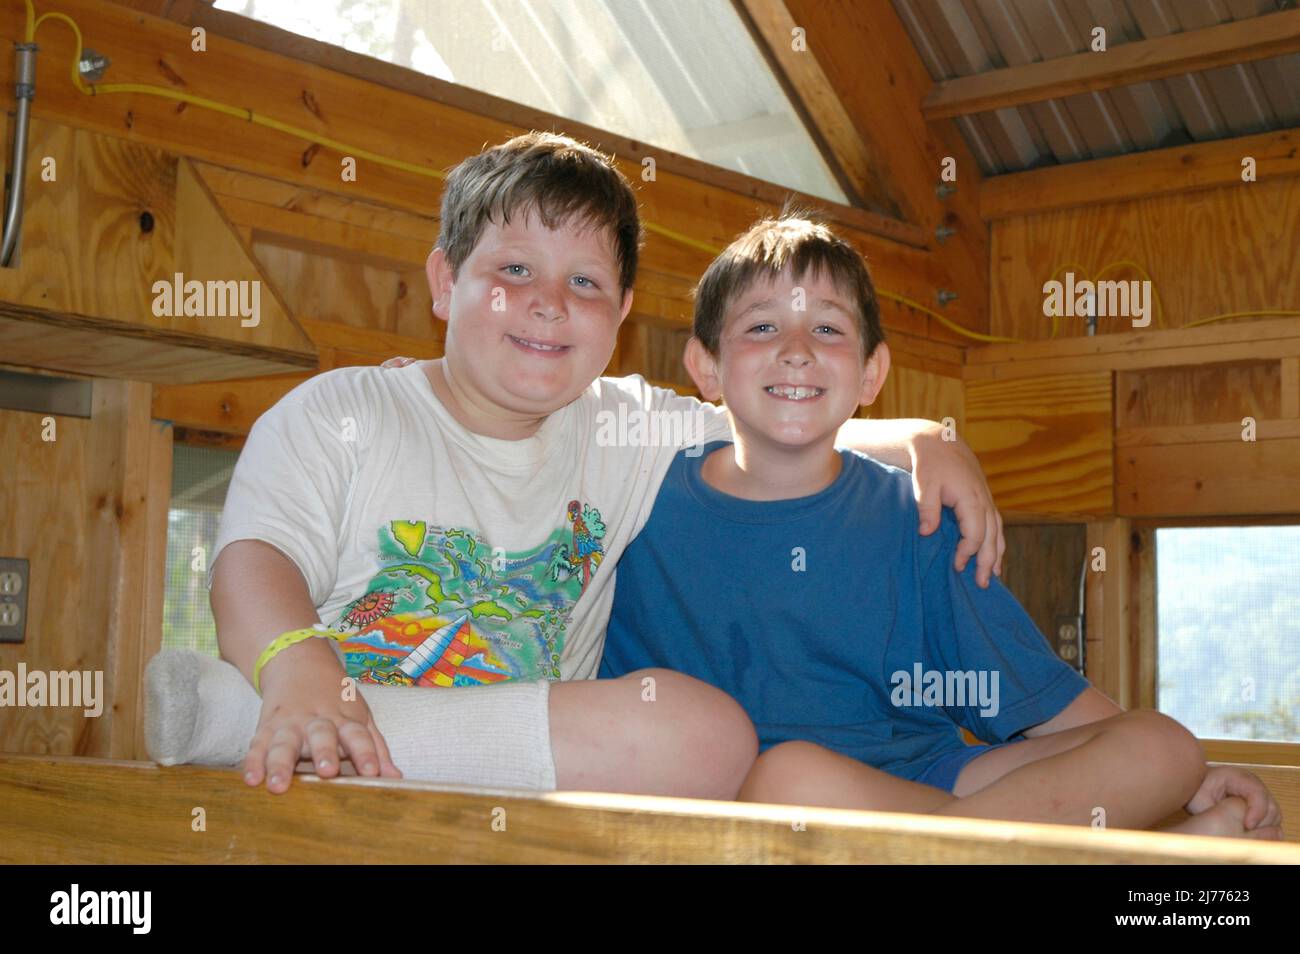 Deux amis, jeunes garçons, qui sont allés au même camp d'été et qui sont voisins à la maison Banque D'Images